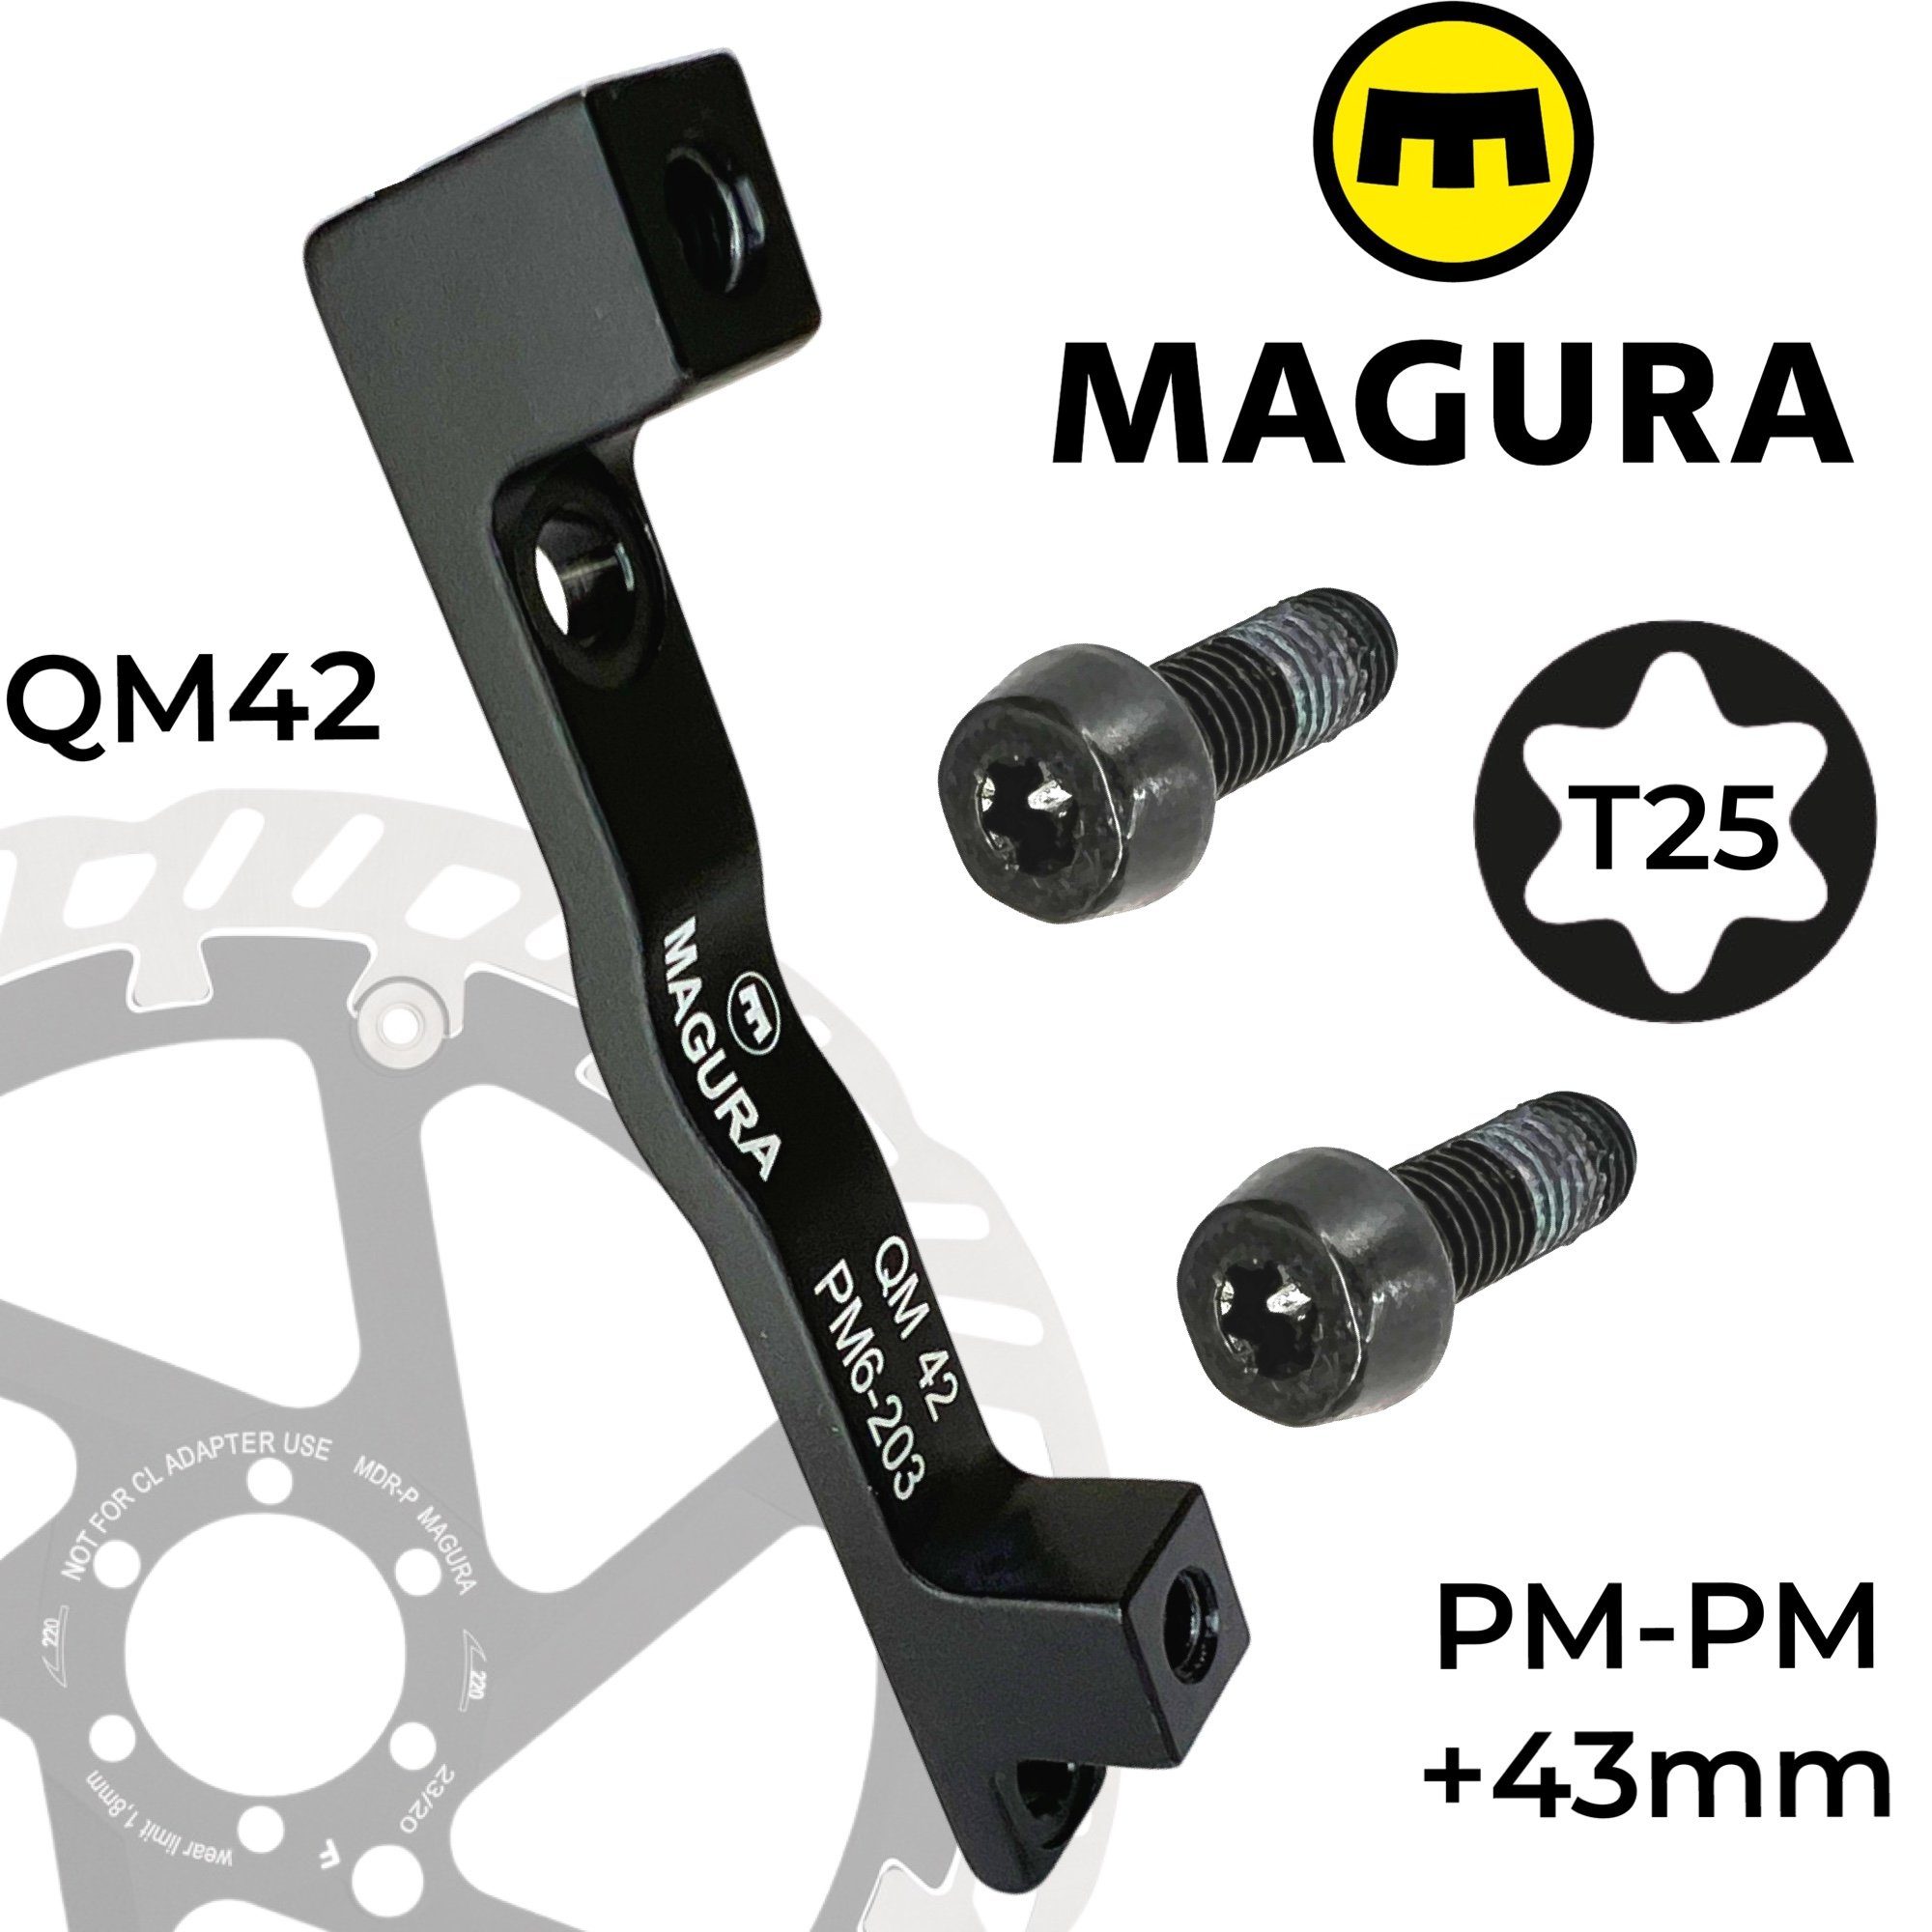 Magura Scheibenbremse Magura Bremsscheiben Adapter PM 160-203 QM42 +43mm